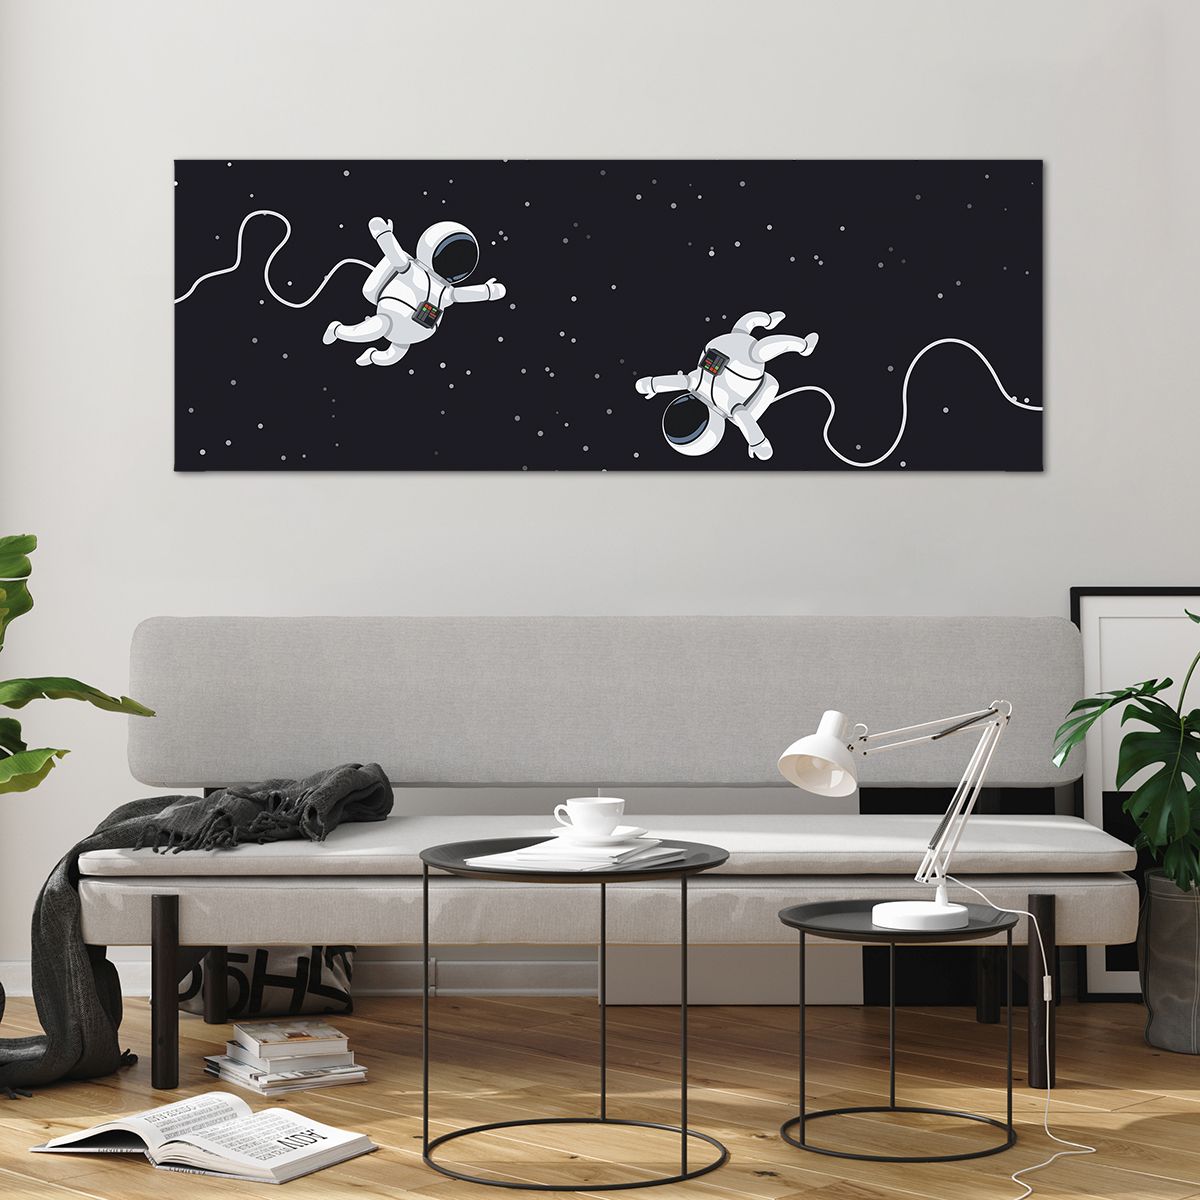 Bild på glas Abstraktion, Bild på glas Astronaut, Bild på glas Kosmos, Bild på glas Svartvitt, Bild på glas För Barn